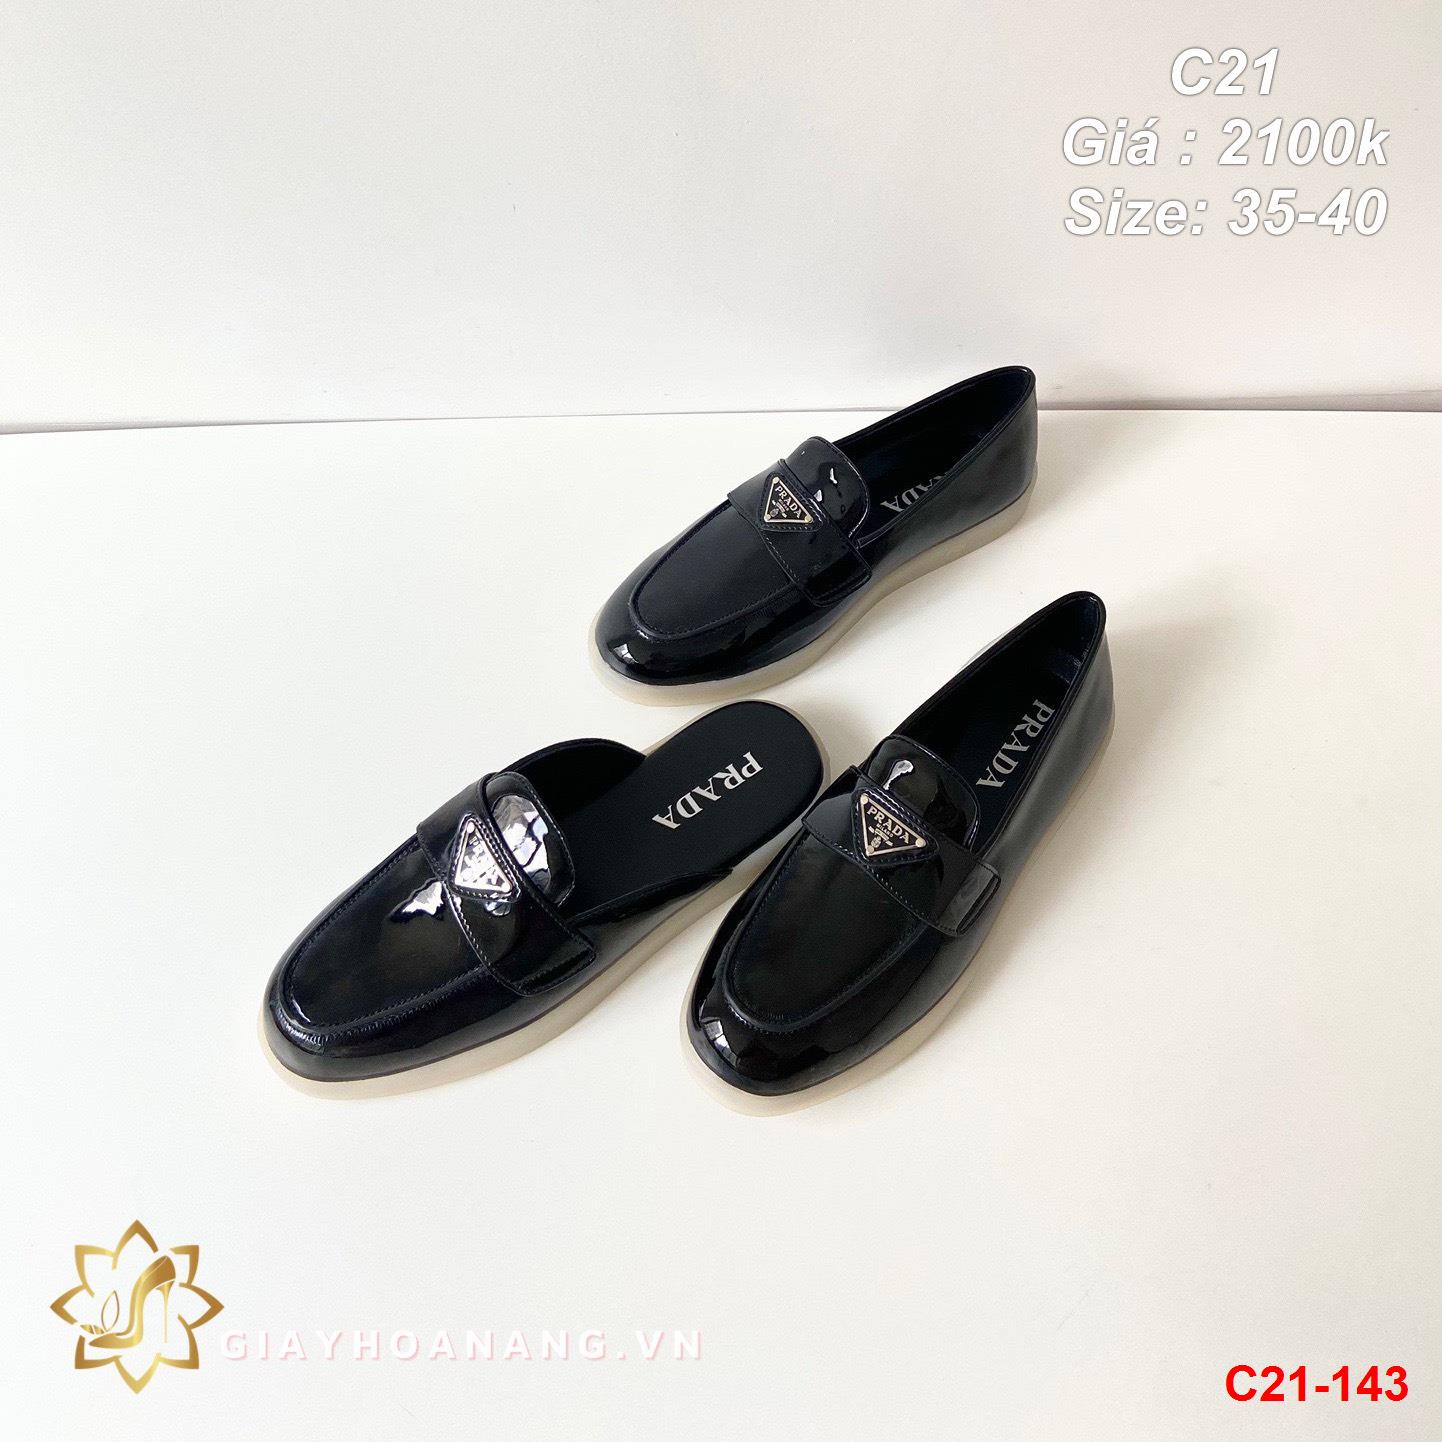 C21-143 Prada giày lười siêu cấp